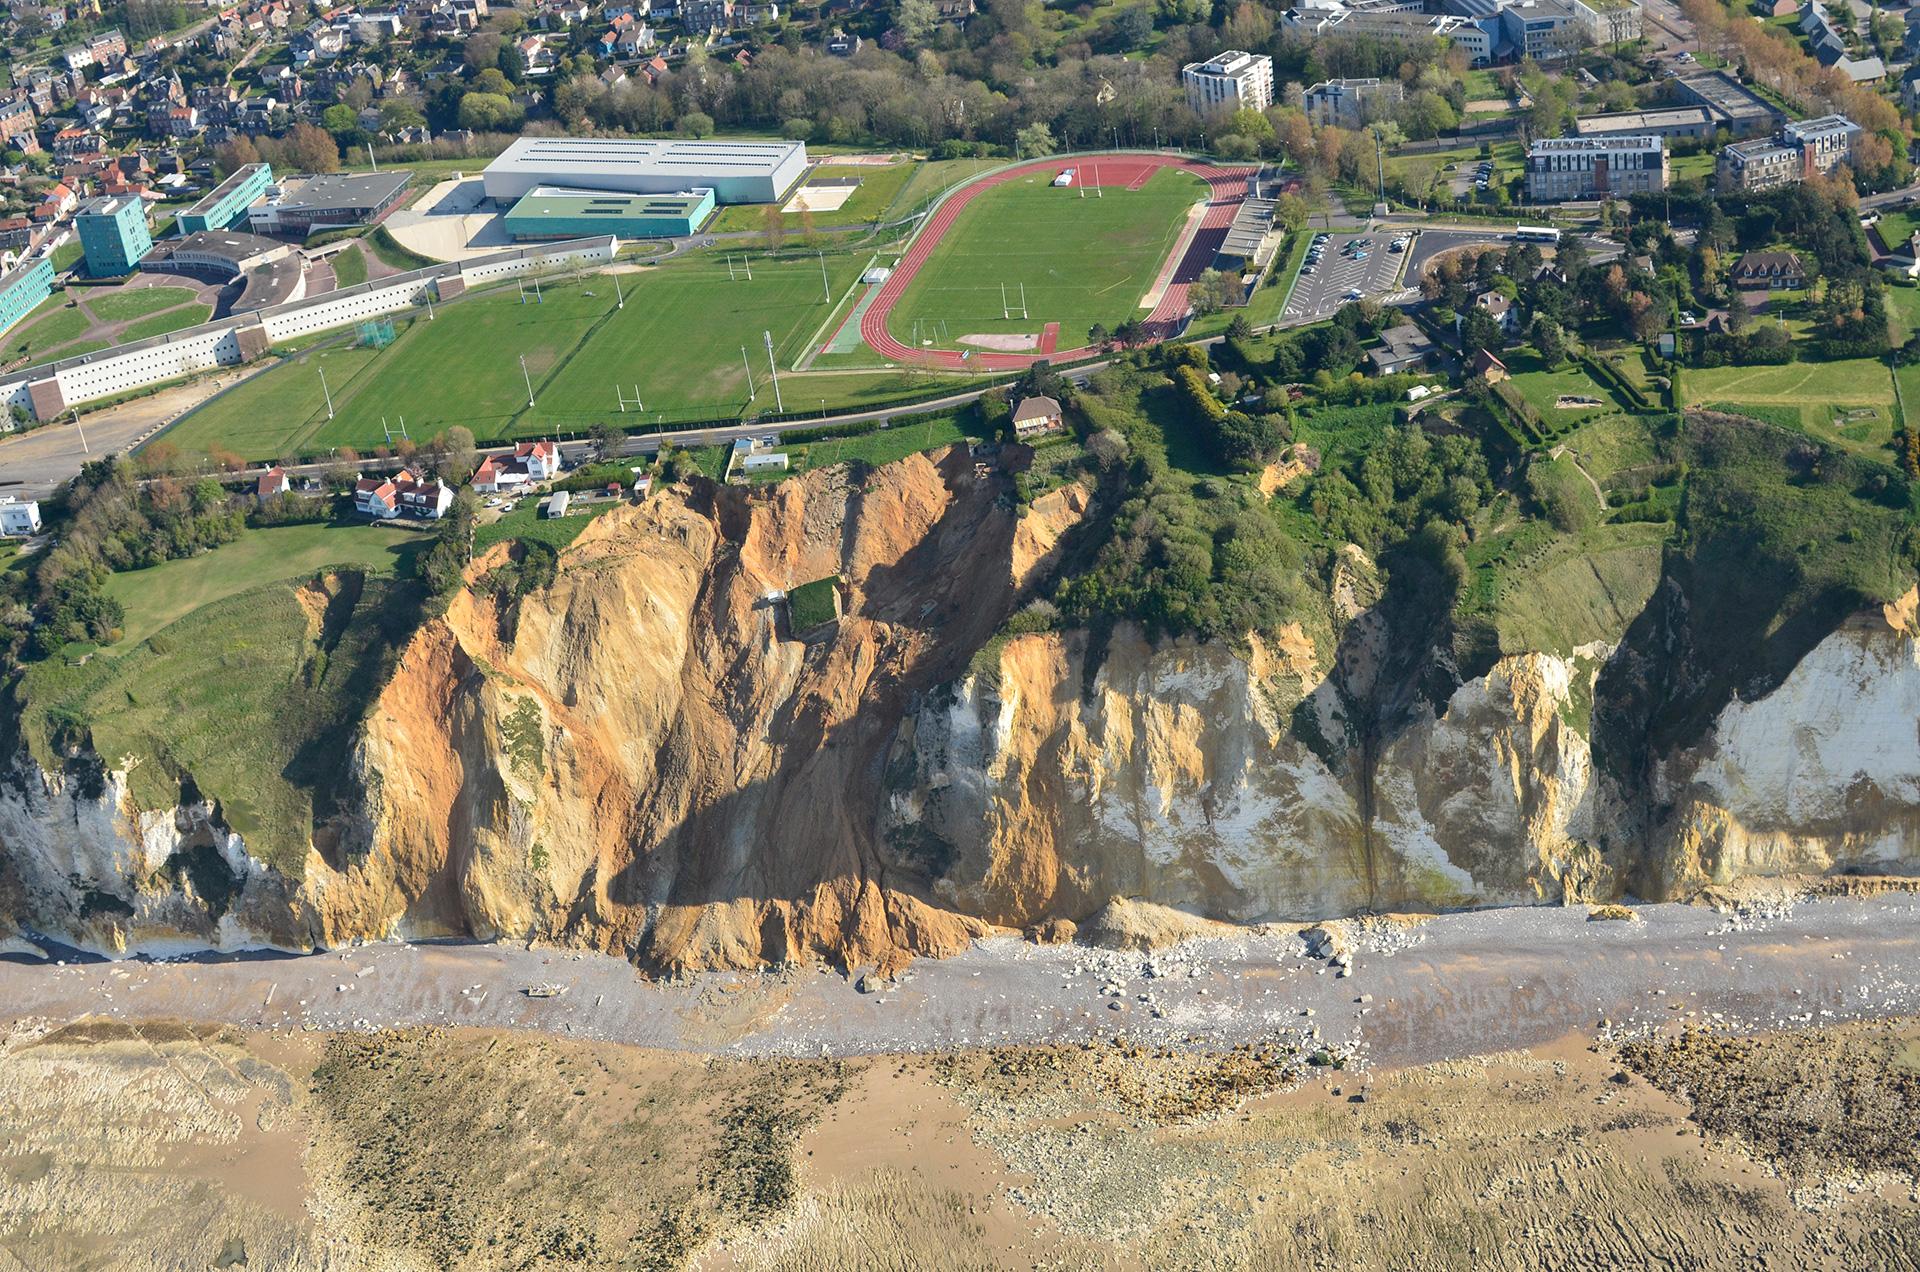 Effondrement lié à une poche de matériaux argilo-sableux au sein d’une falaise de craie entre Dieppe et Pourville menaçant une route, des habitations et un stade (Seine-Maritime, 2014).